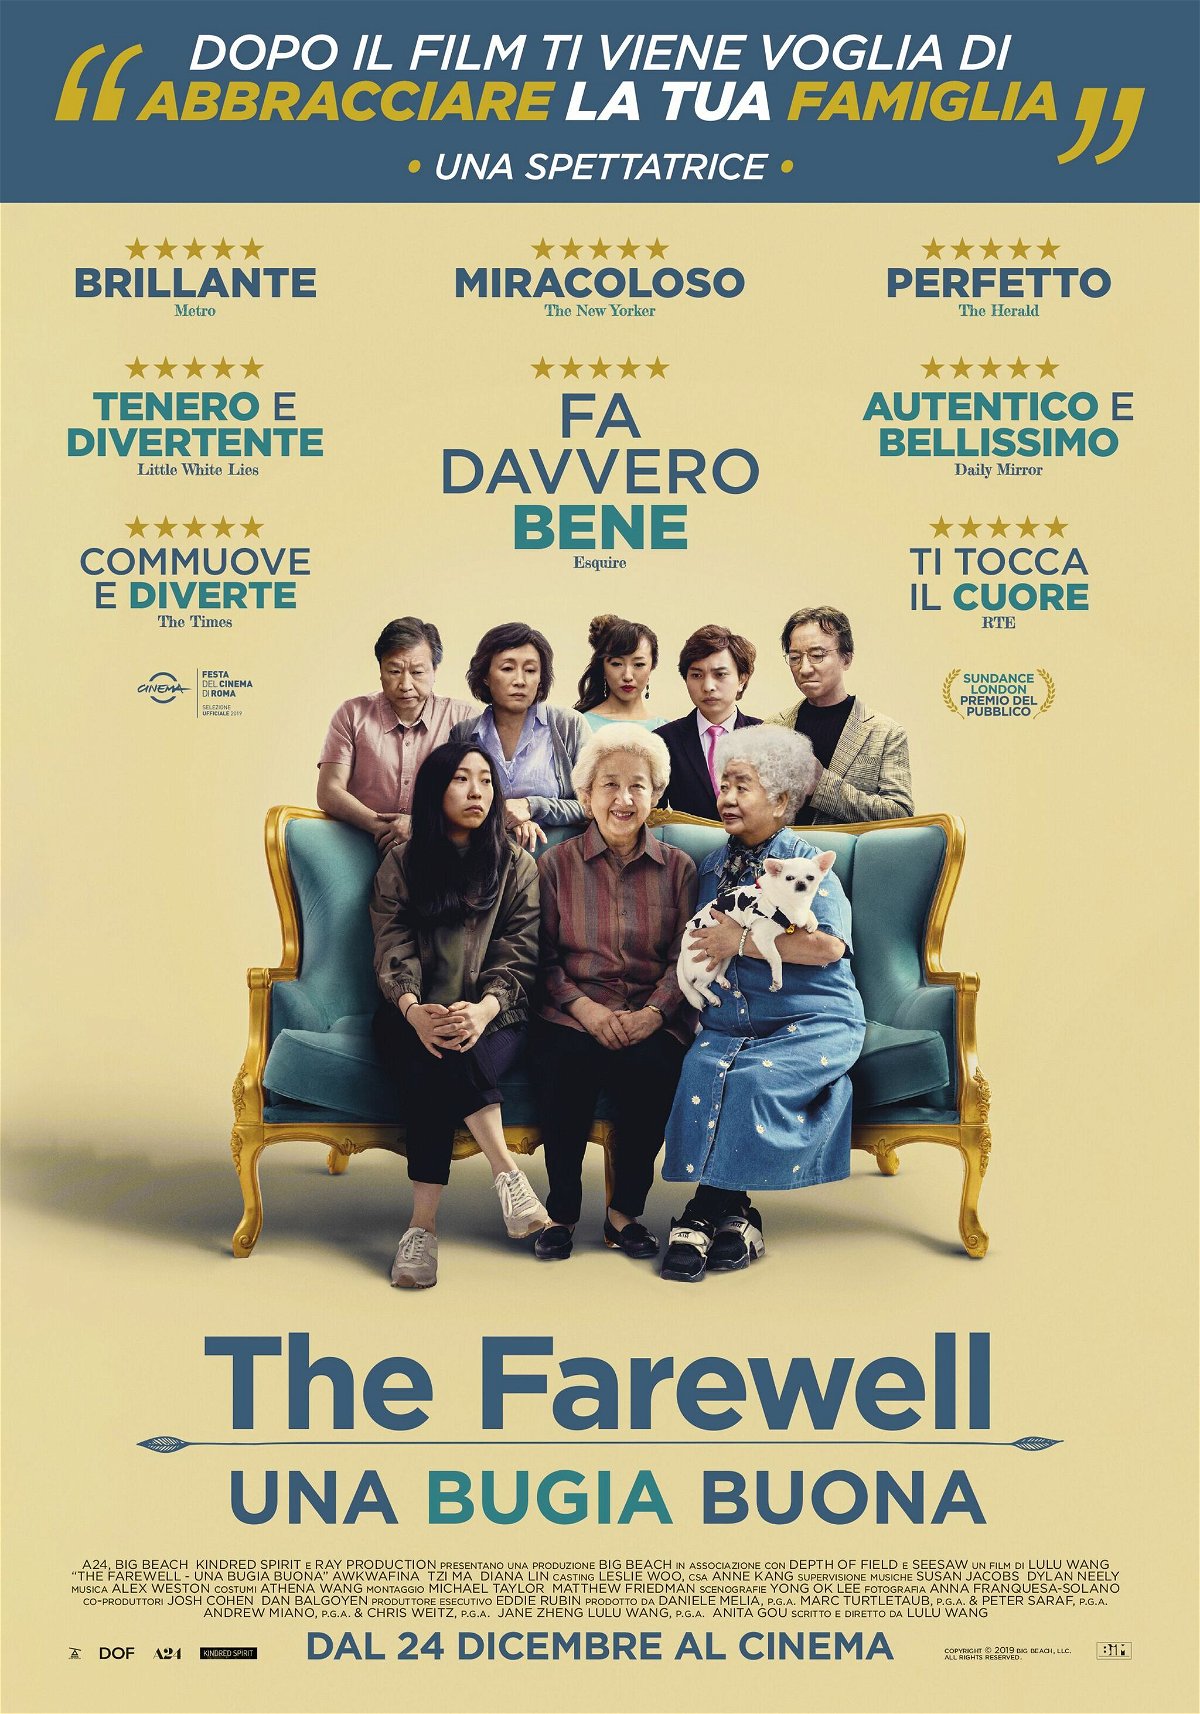 The Farewell - Una bugia buona manifesto film